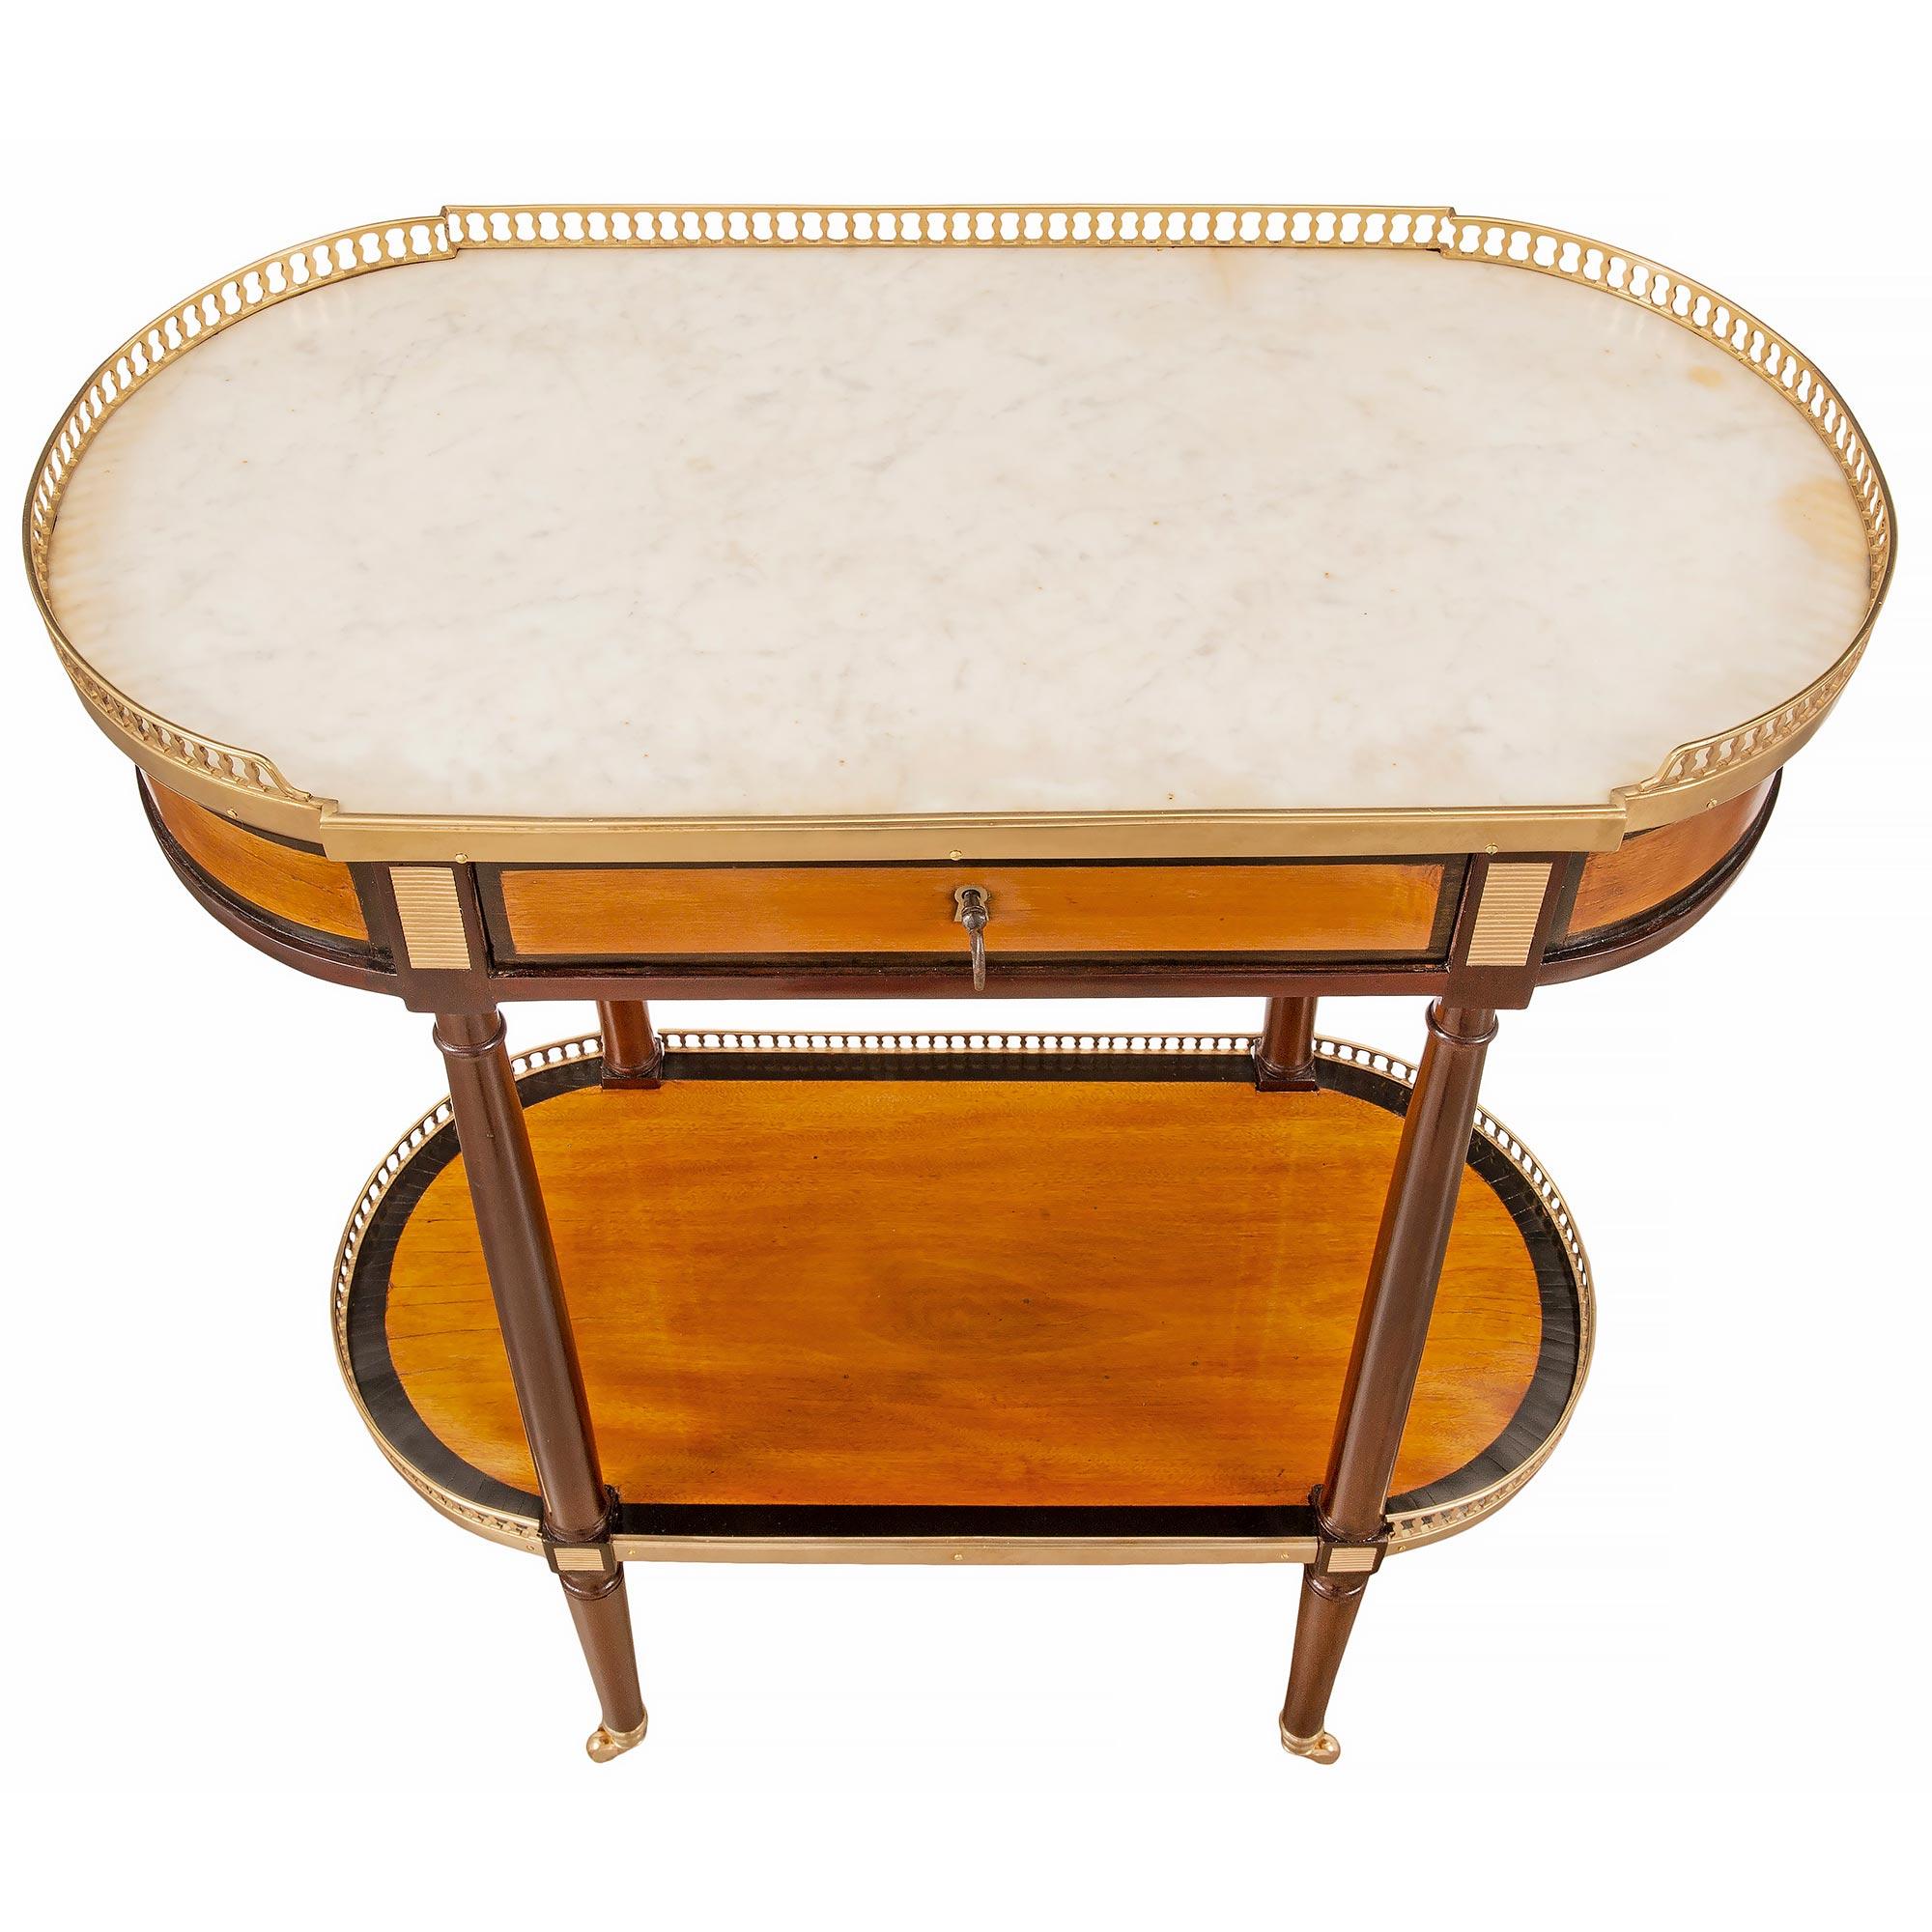 Ein sehr eleganter ovaler Beistelltisch aus Mahagoni, Satinholz und Ormolu aus dem 19. Der Tisch steht auf feinen, kreisförmig verjüngten Beinen mit ihren originalen Ormolu-Rollen. An die Beine schließt sich eine mit Satinholz eingelegte